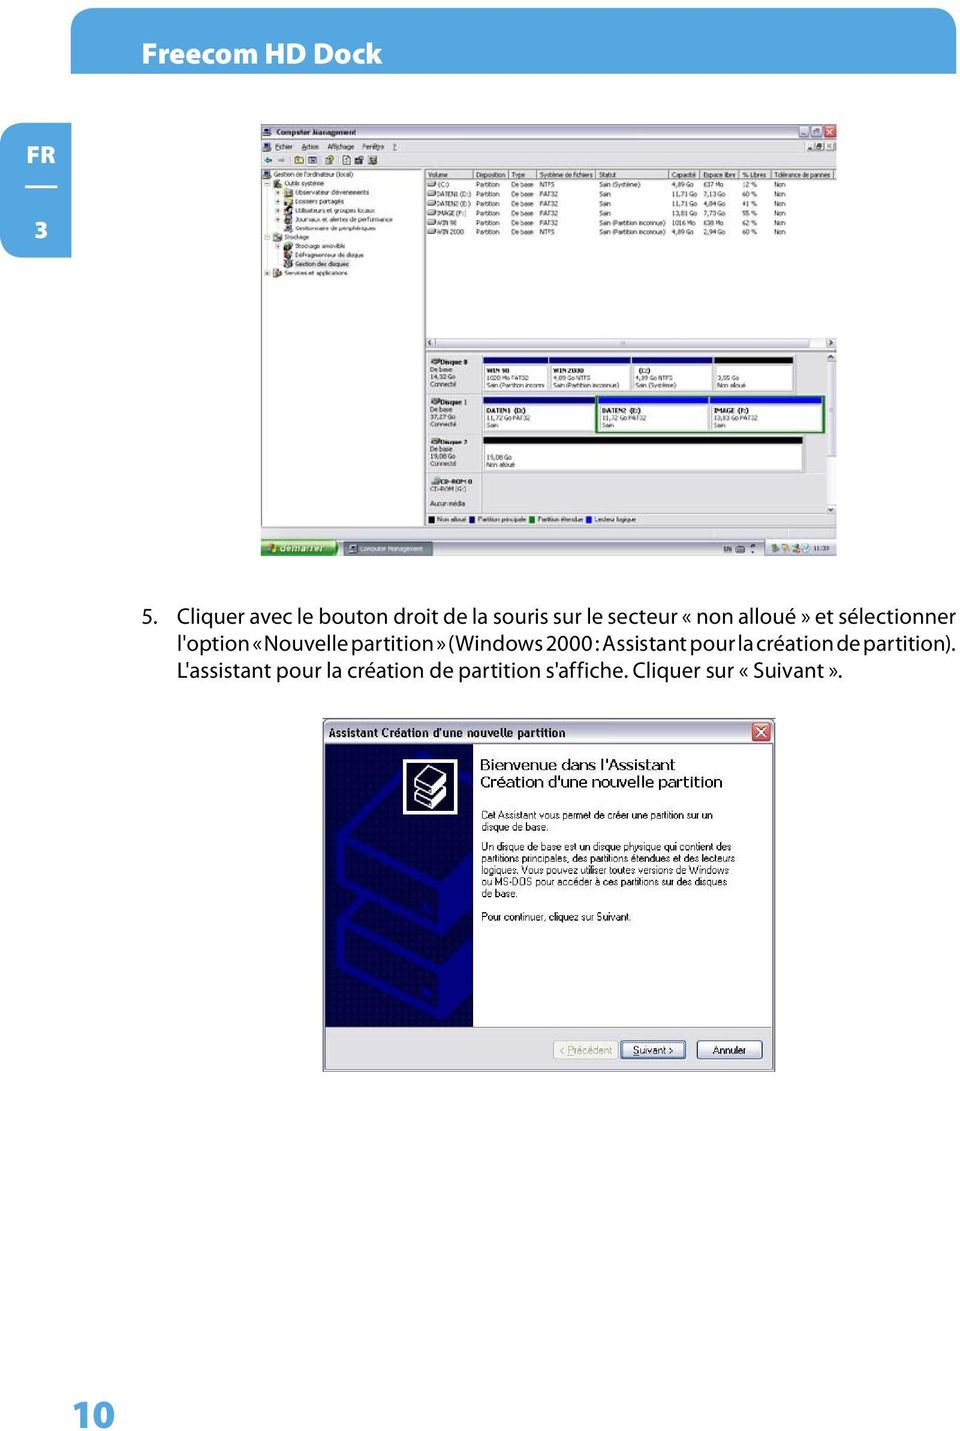 alloué» et sélectionner l'option «Nouvelle partition» (Windows 2000